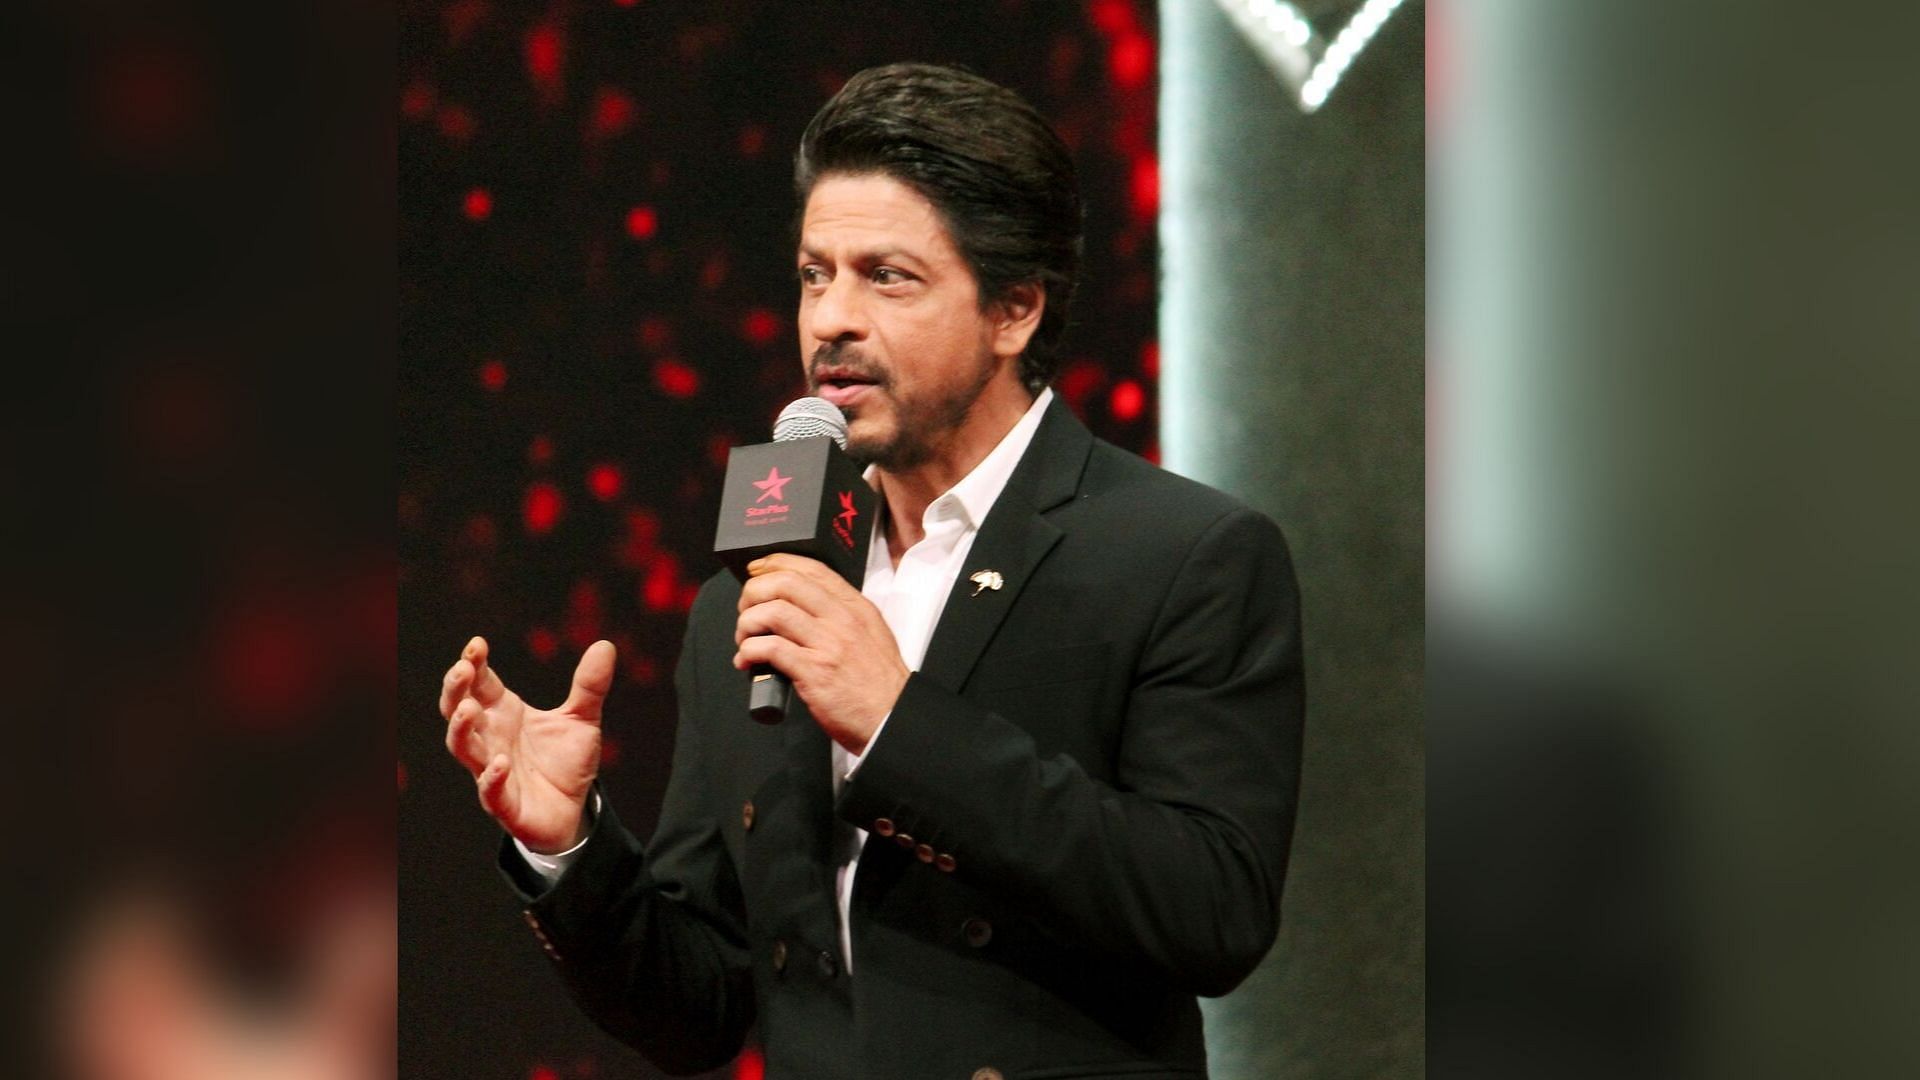 Shah Rukh Khan at TED Talks event.&nbsp;